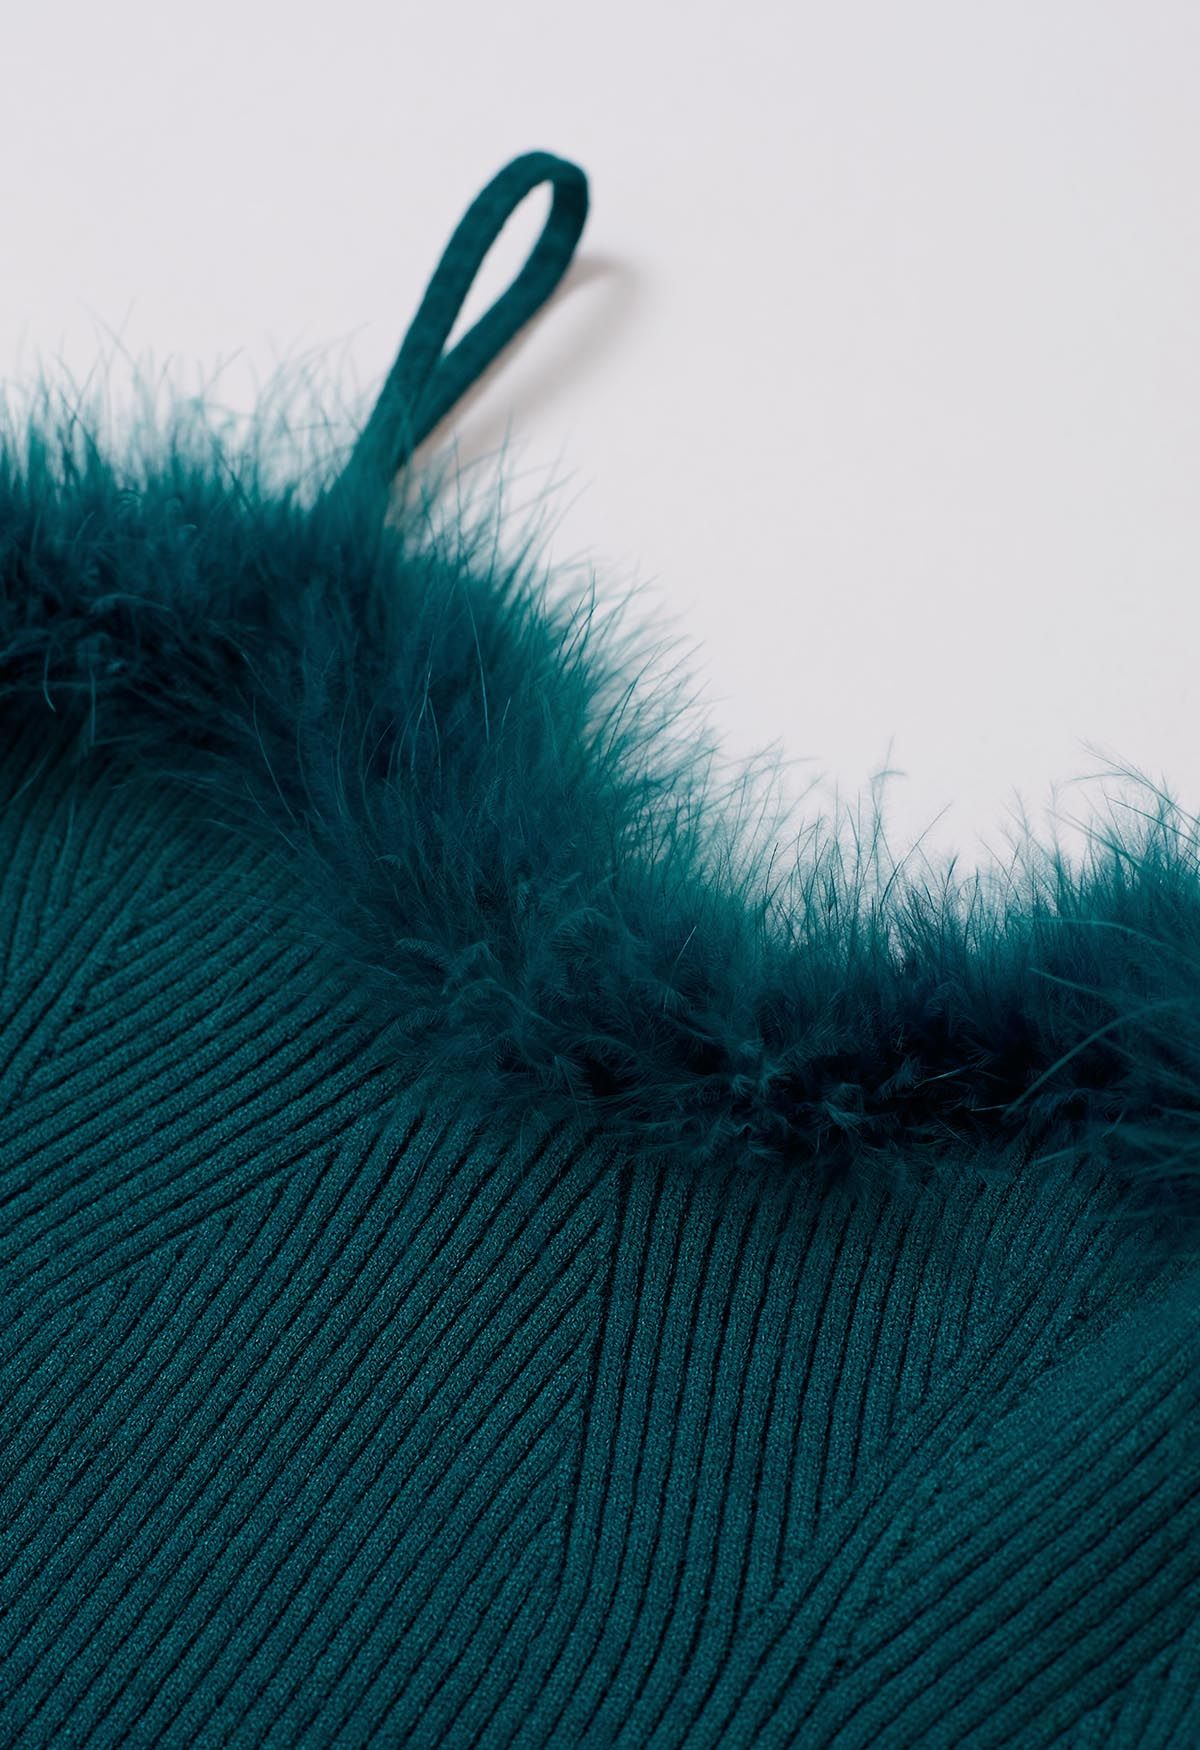 Set aus Cami-Oberteil und Pullover-Ärmeln mit Federbesatz in Blaugrün